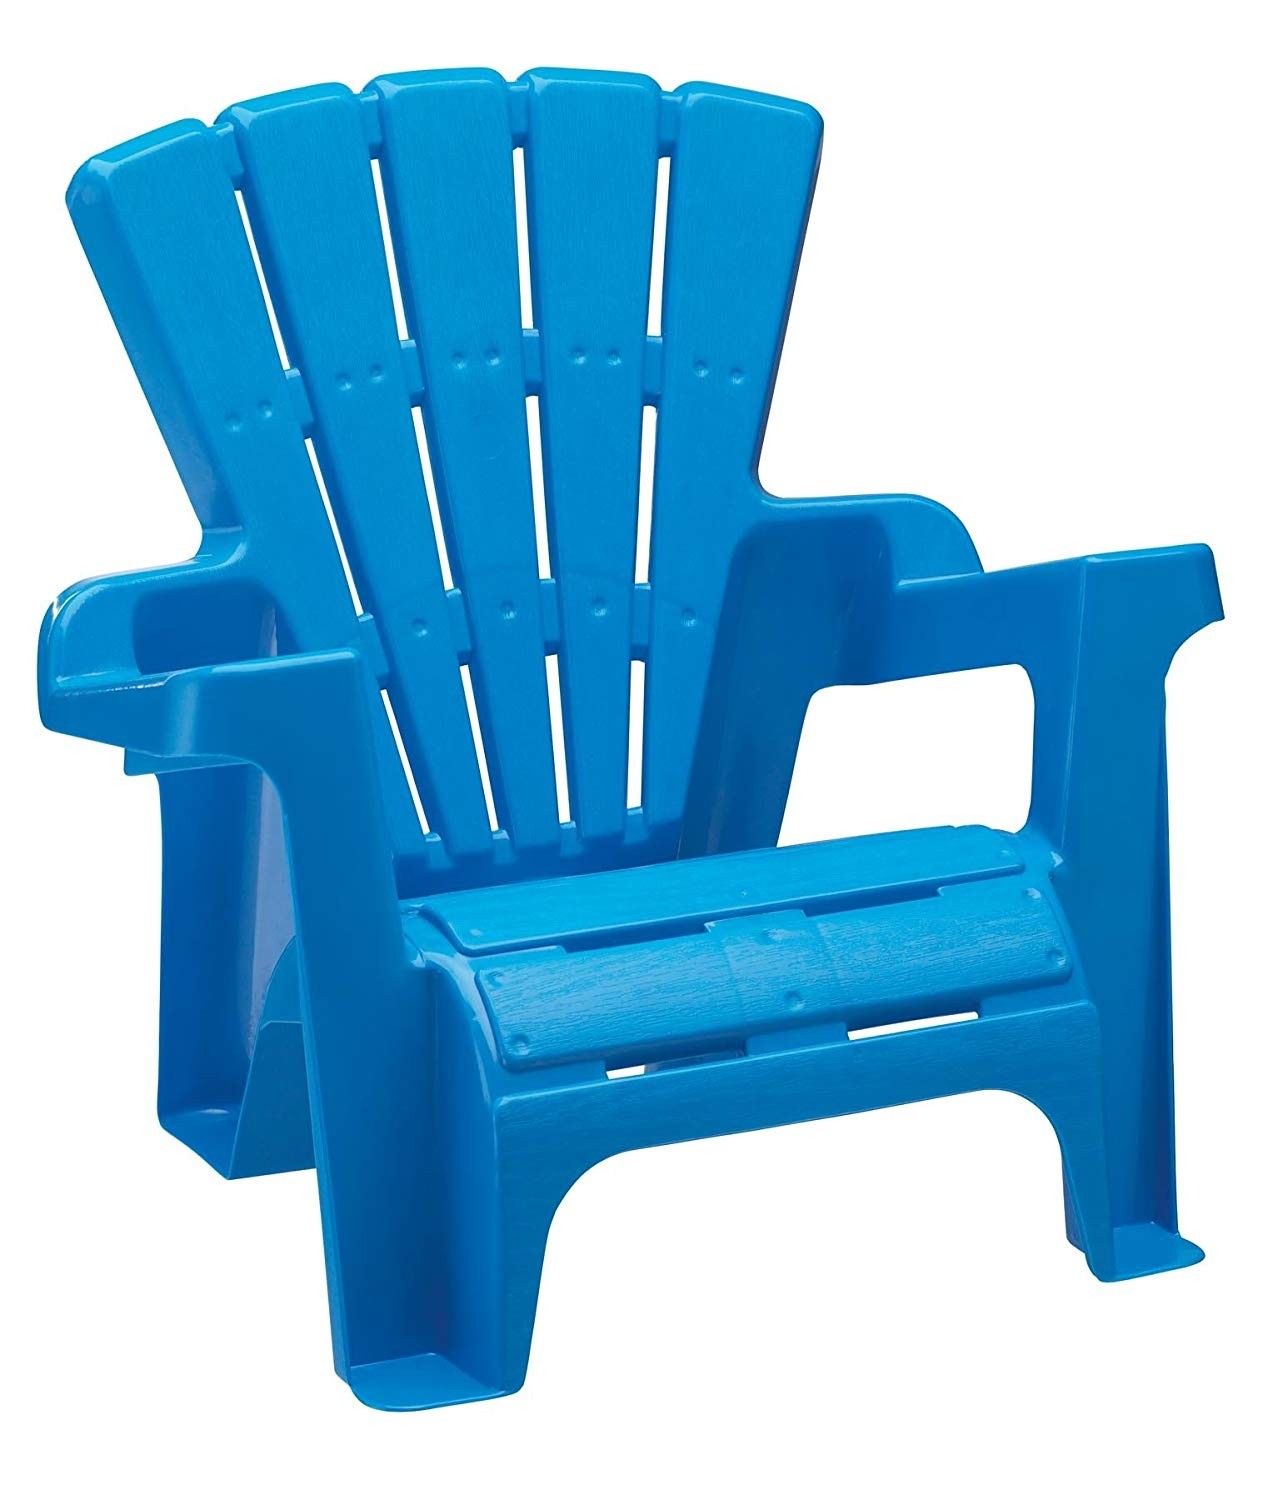 Stackable plastic garden chairs